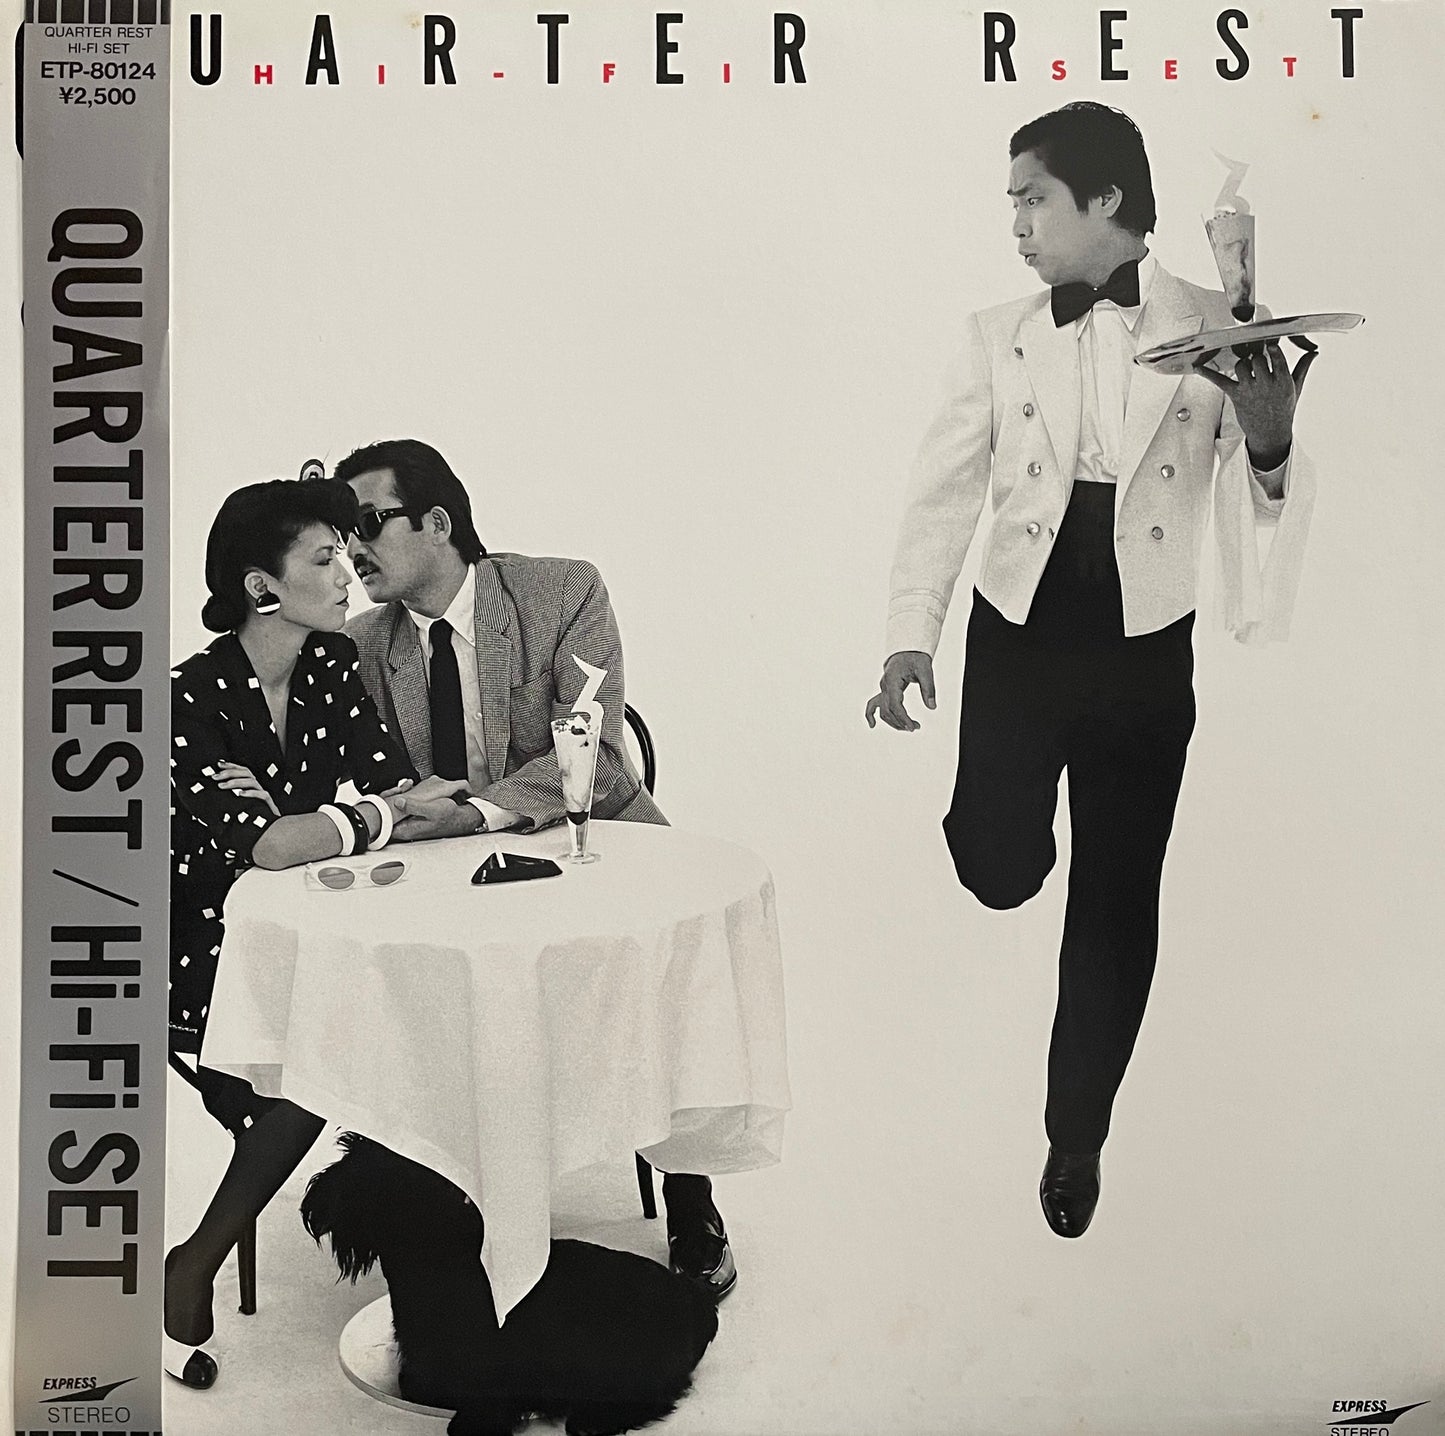 Hi-Fi Set "Quarter Rest (1979)